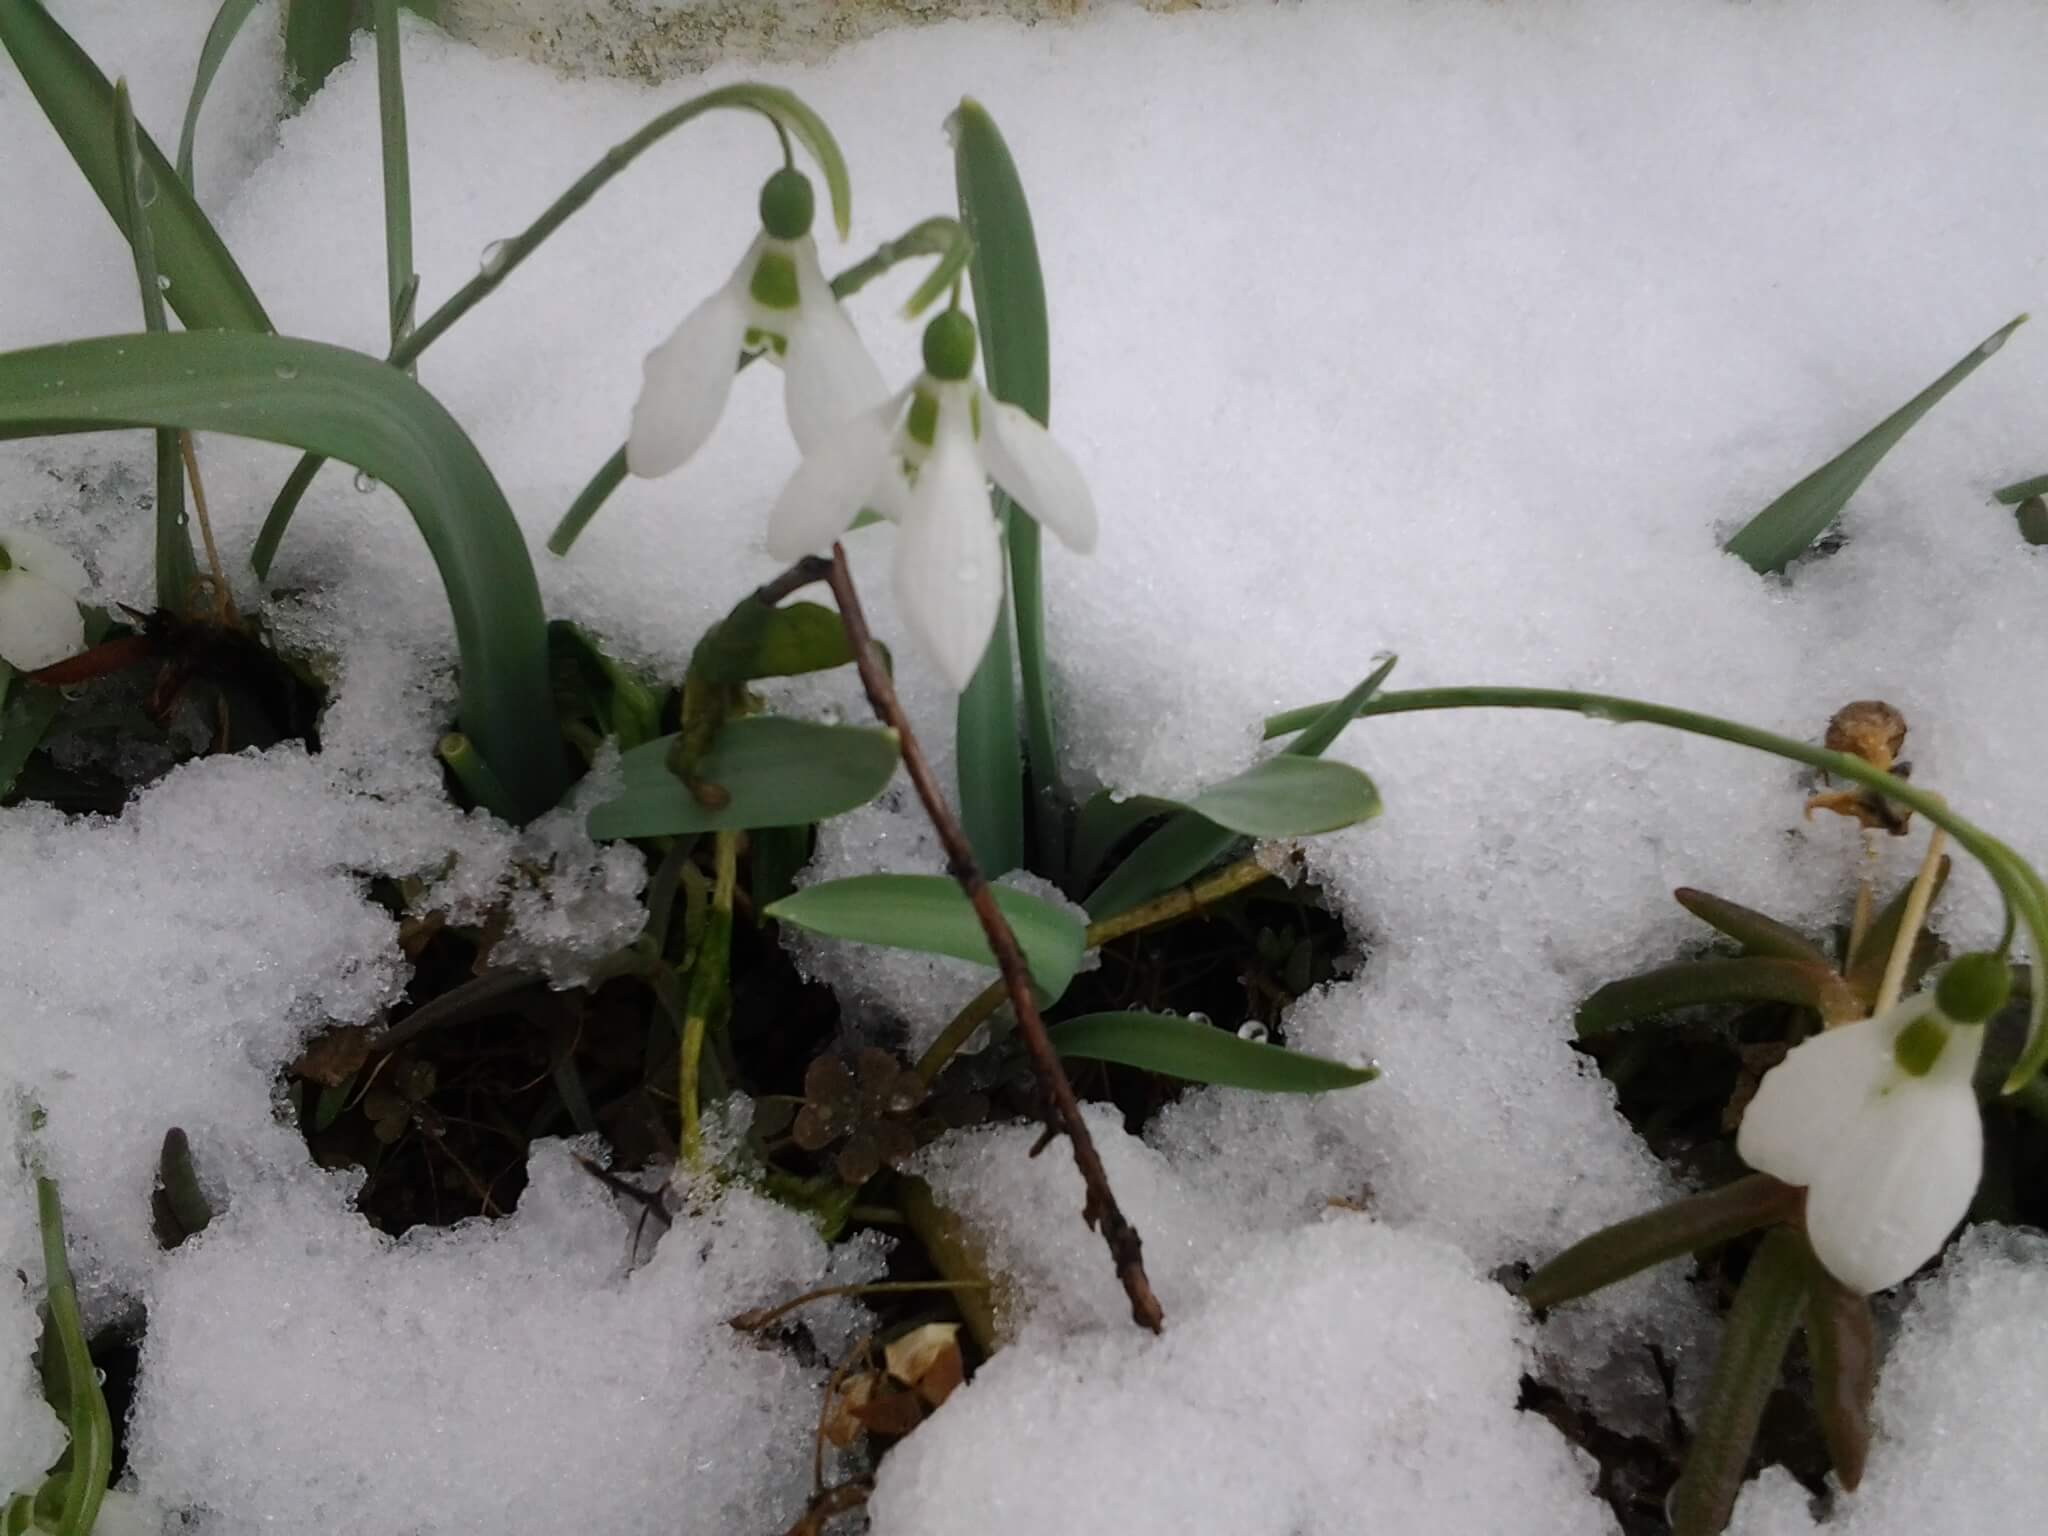 Visibabe pod snegom - februar 2018